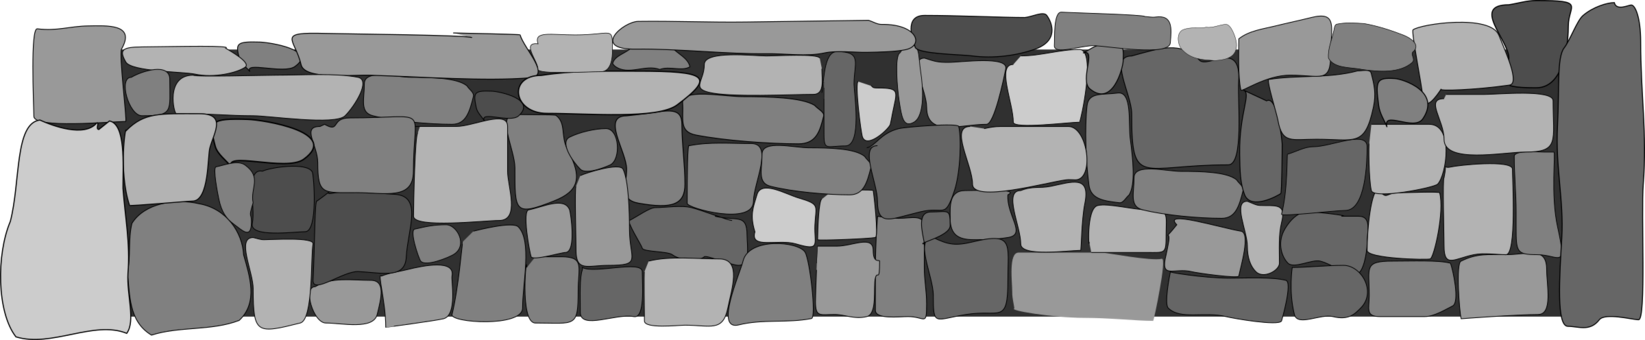 Кирпичная каменная стена PNG Image